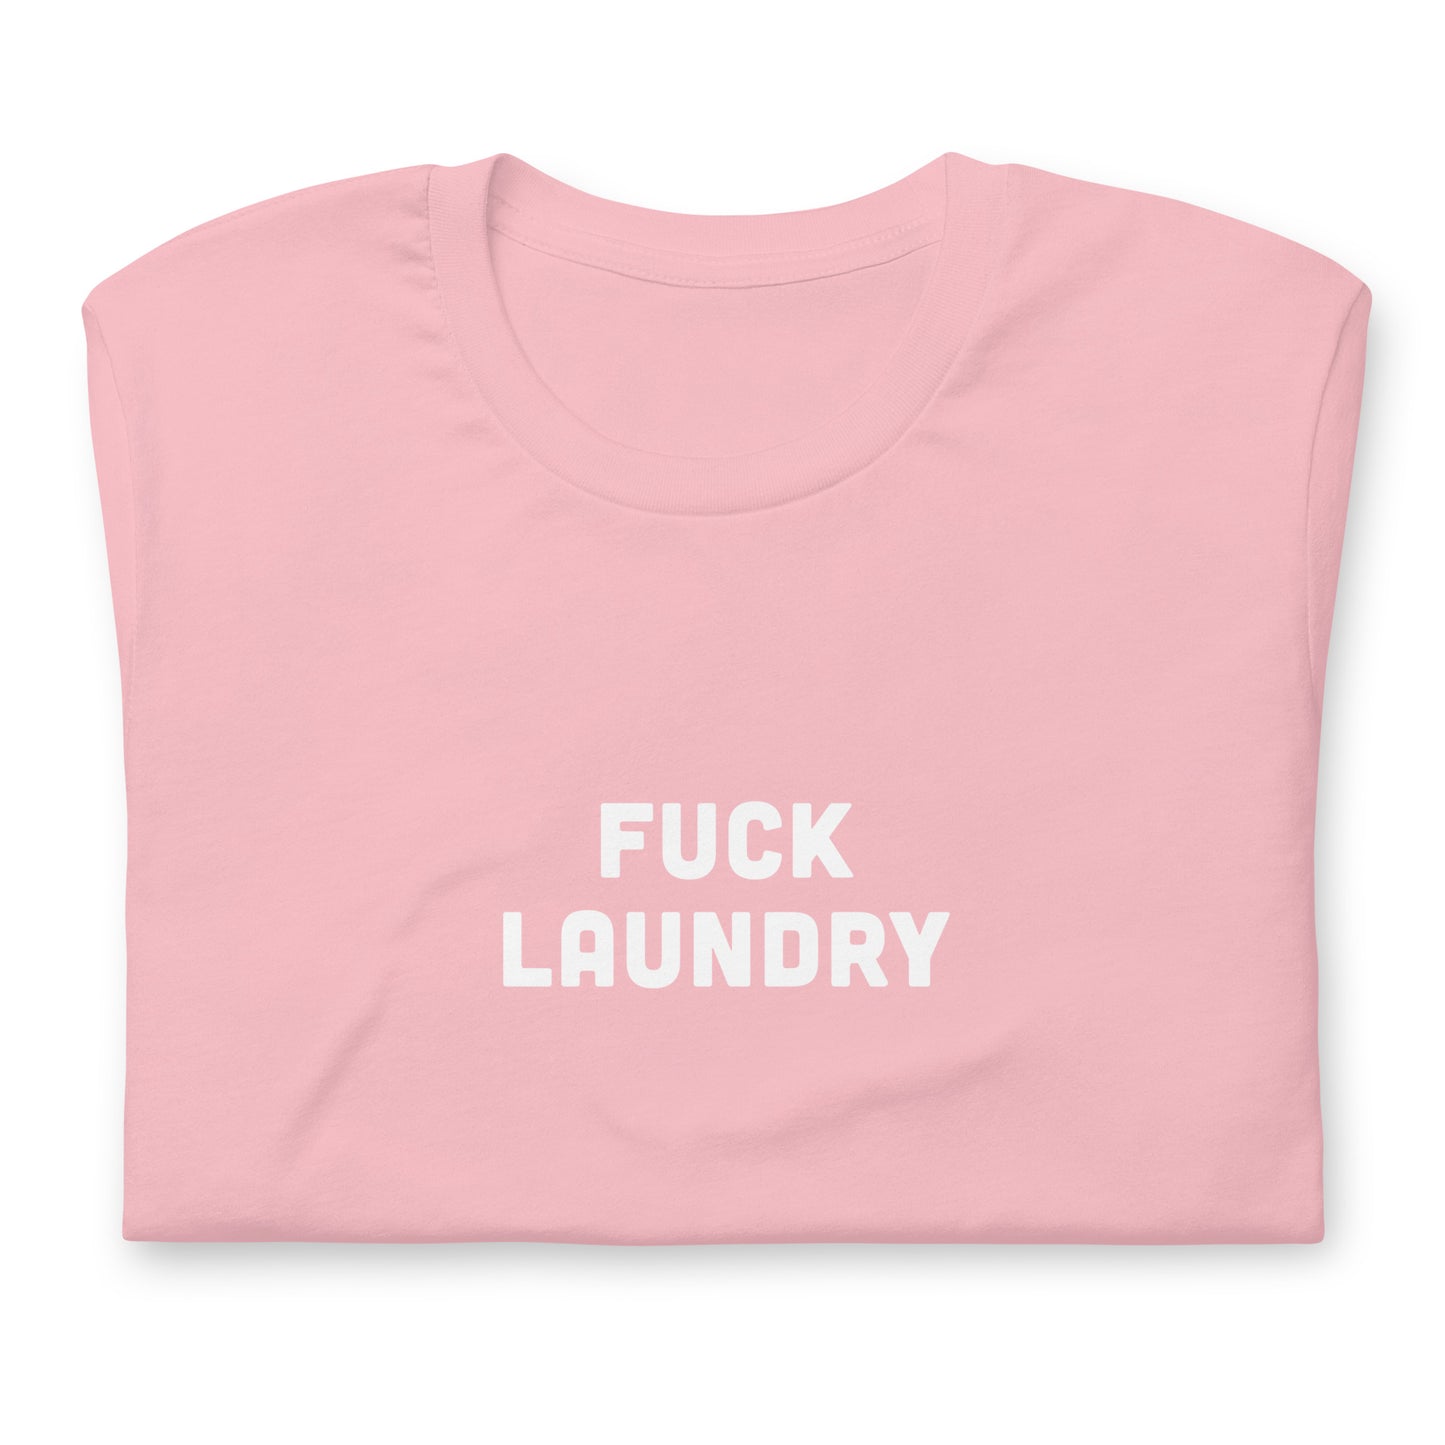 Fuck Laundry T-Shirt Size M Color Asphalt